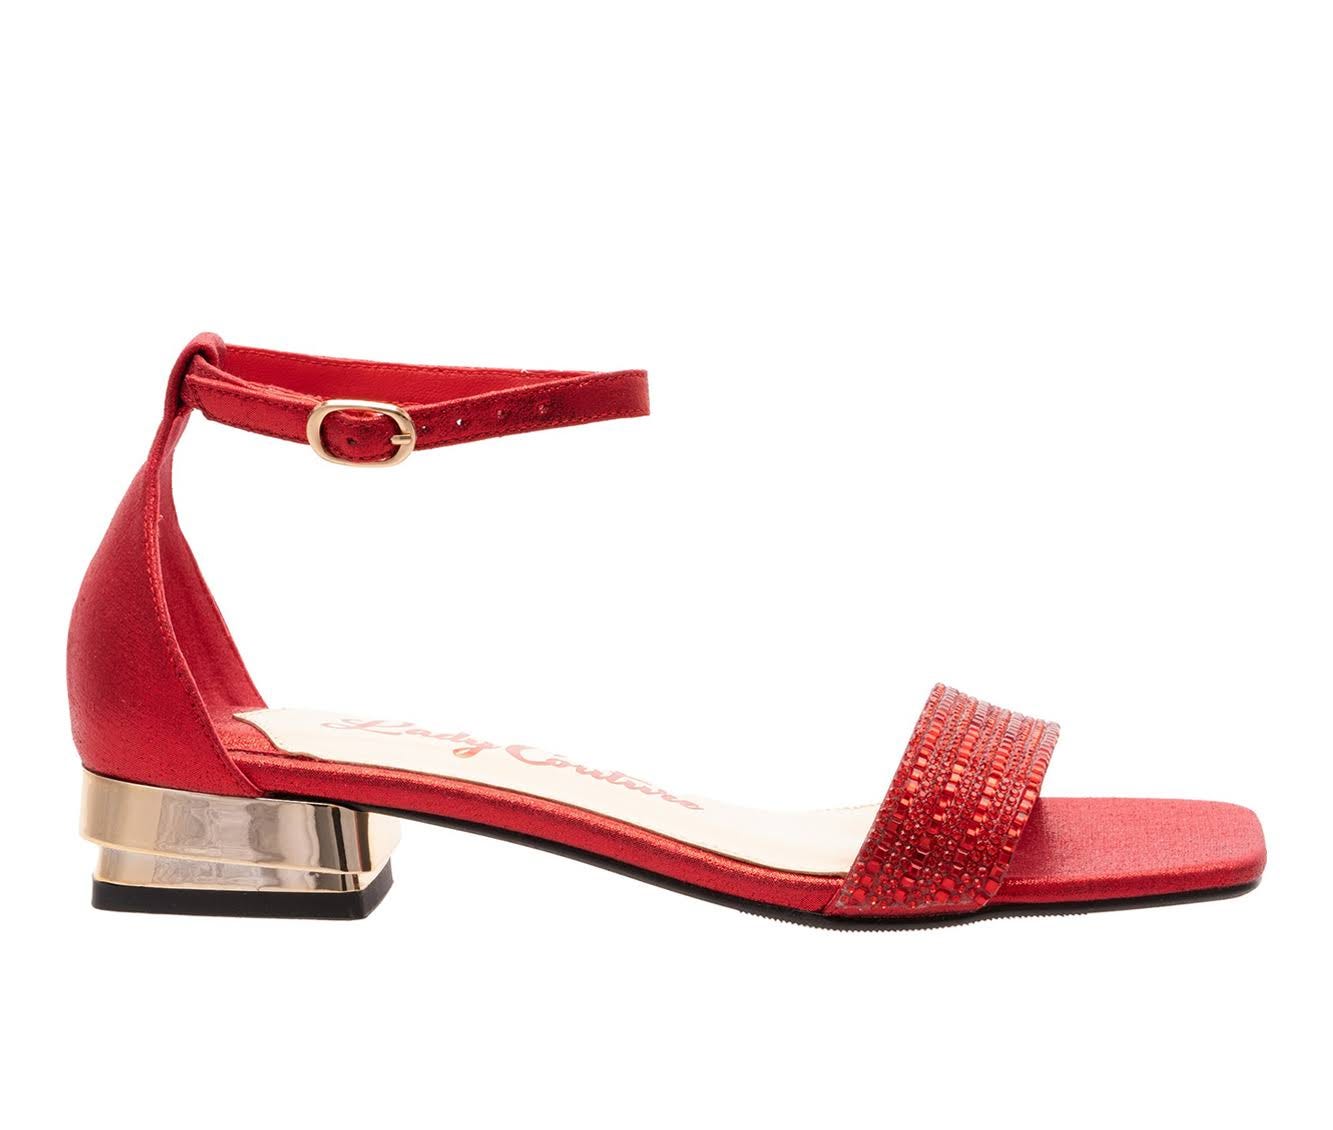 Elegant Red Metallic Heel Sandals | Image